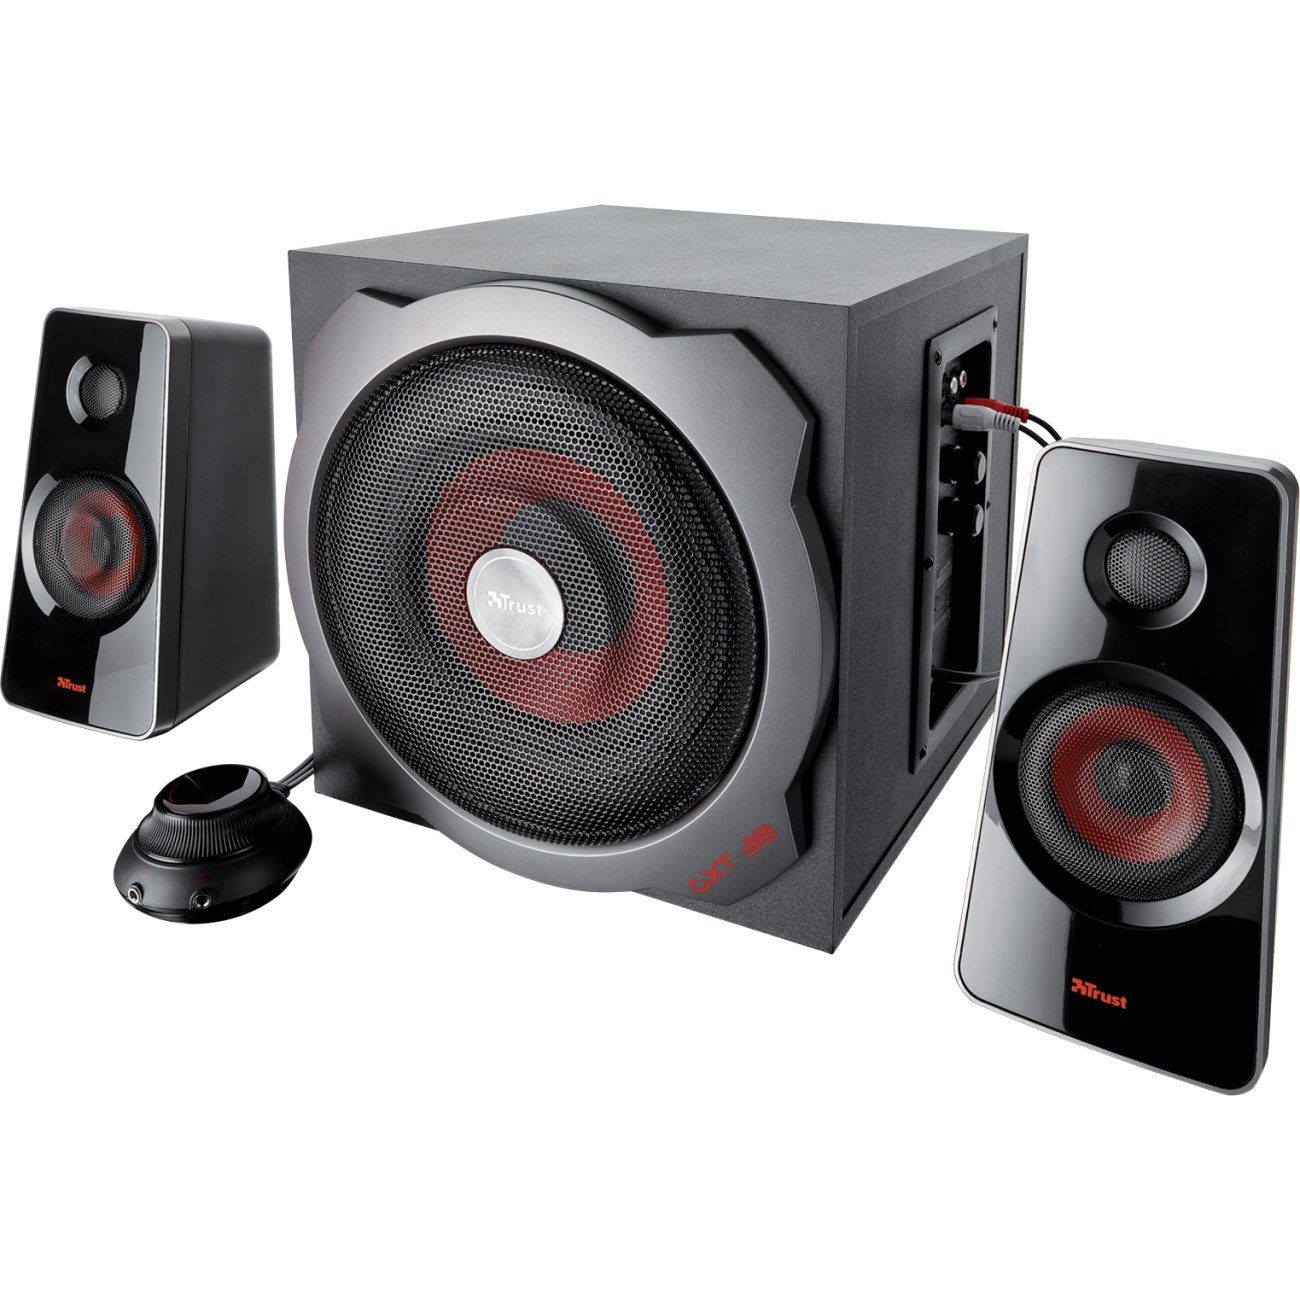 Trust GXT 38 2.1 PC-Lautsprecher (120 W, Lautsprecherset mit 1 Subwoofer und 2 Satelllit-Lautsprecher, Subwoofer aus Holz für vollen und kräftigen Sound, Energiesparmodus)